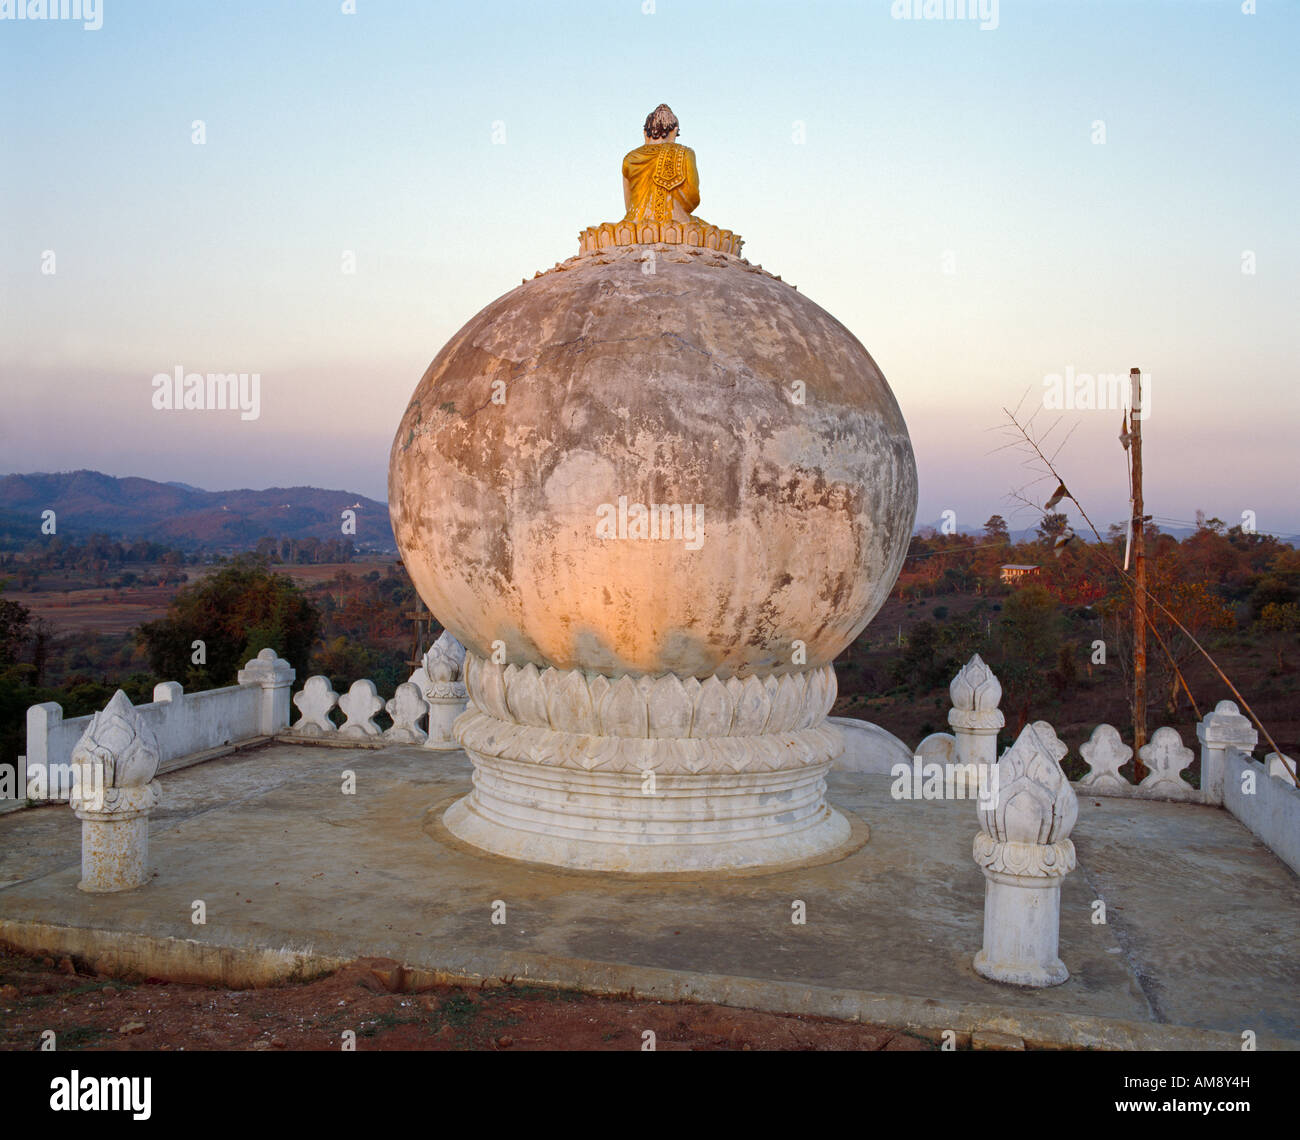 Buddhafigur sitzt auf  Weltenkugel und schaut in die Landschaft buddha staue sitting on a globe looking out in the landscape Stock Photo